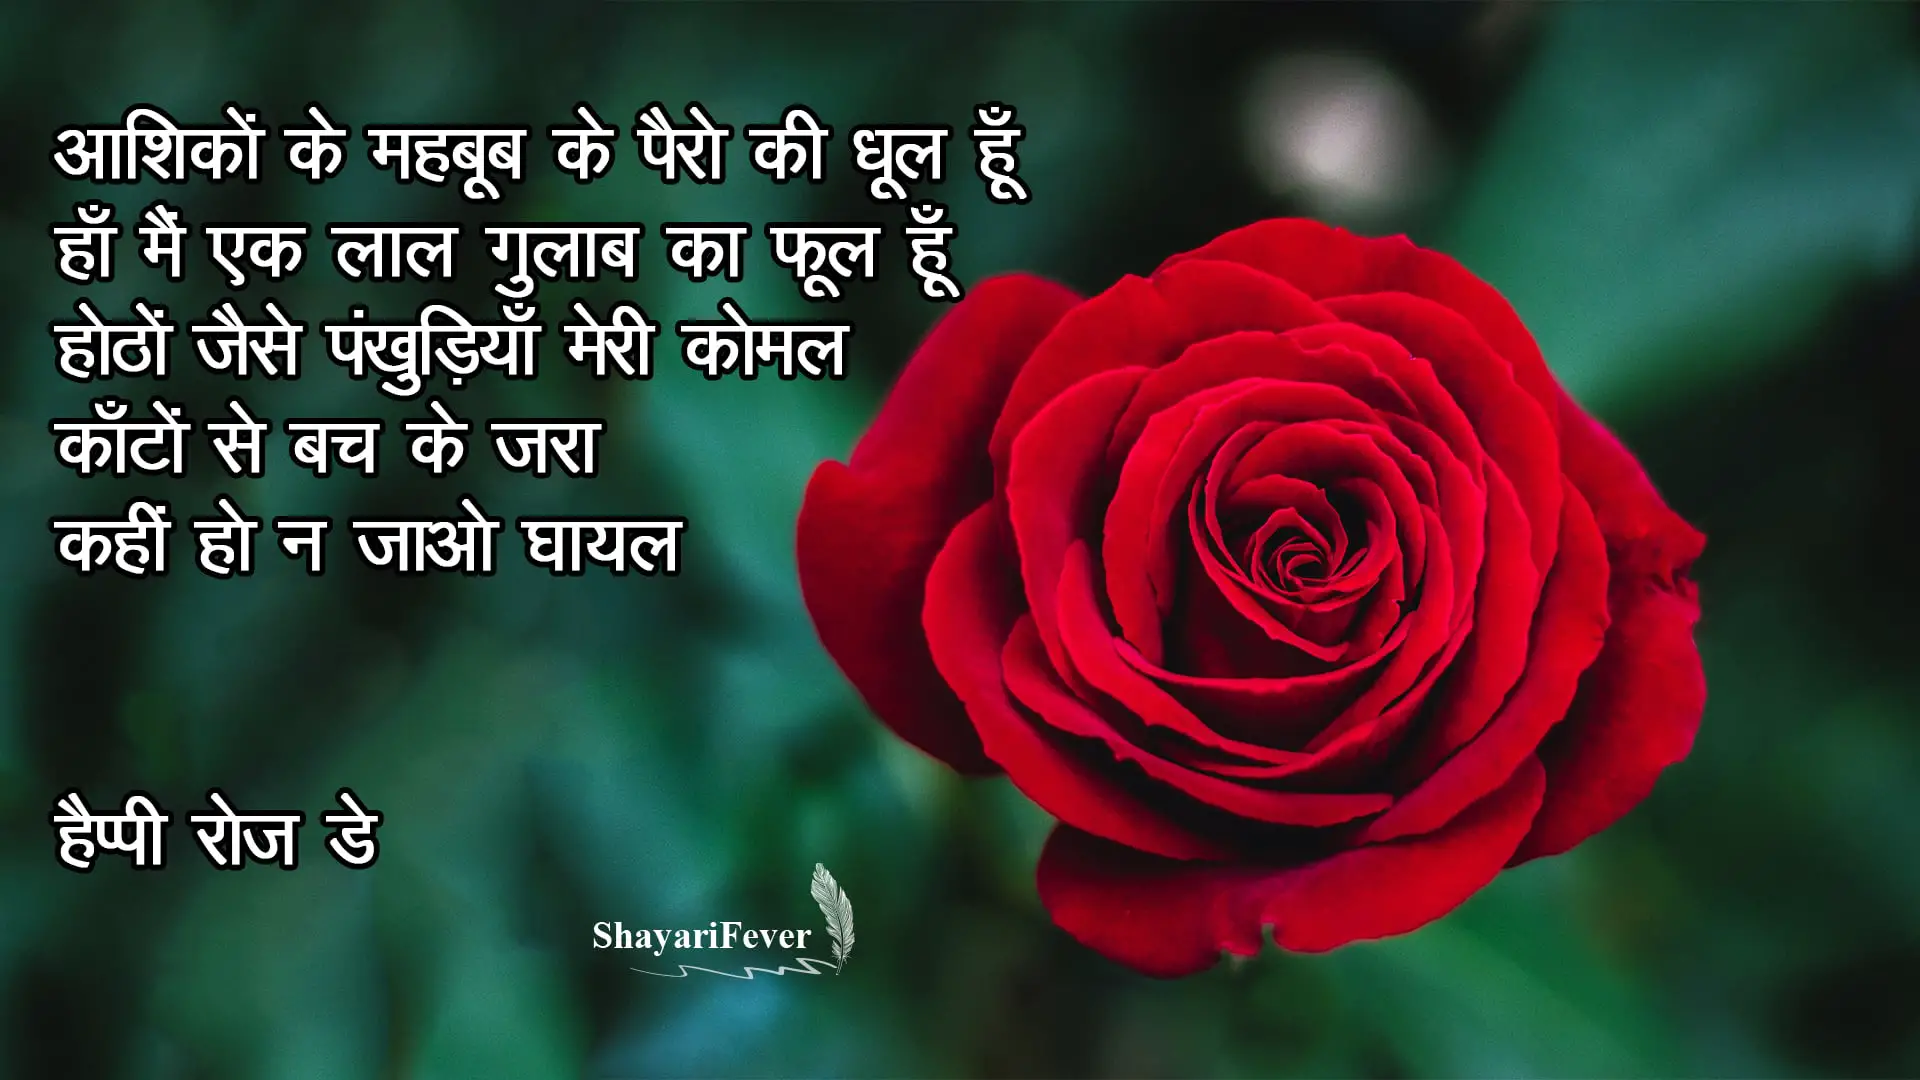 Rose Day Shayari Hindi 2019